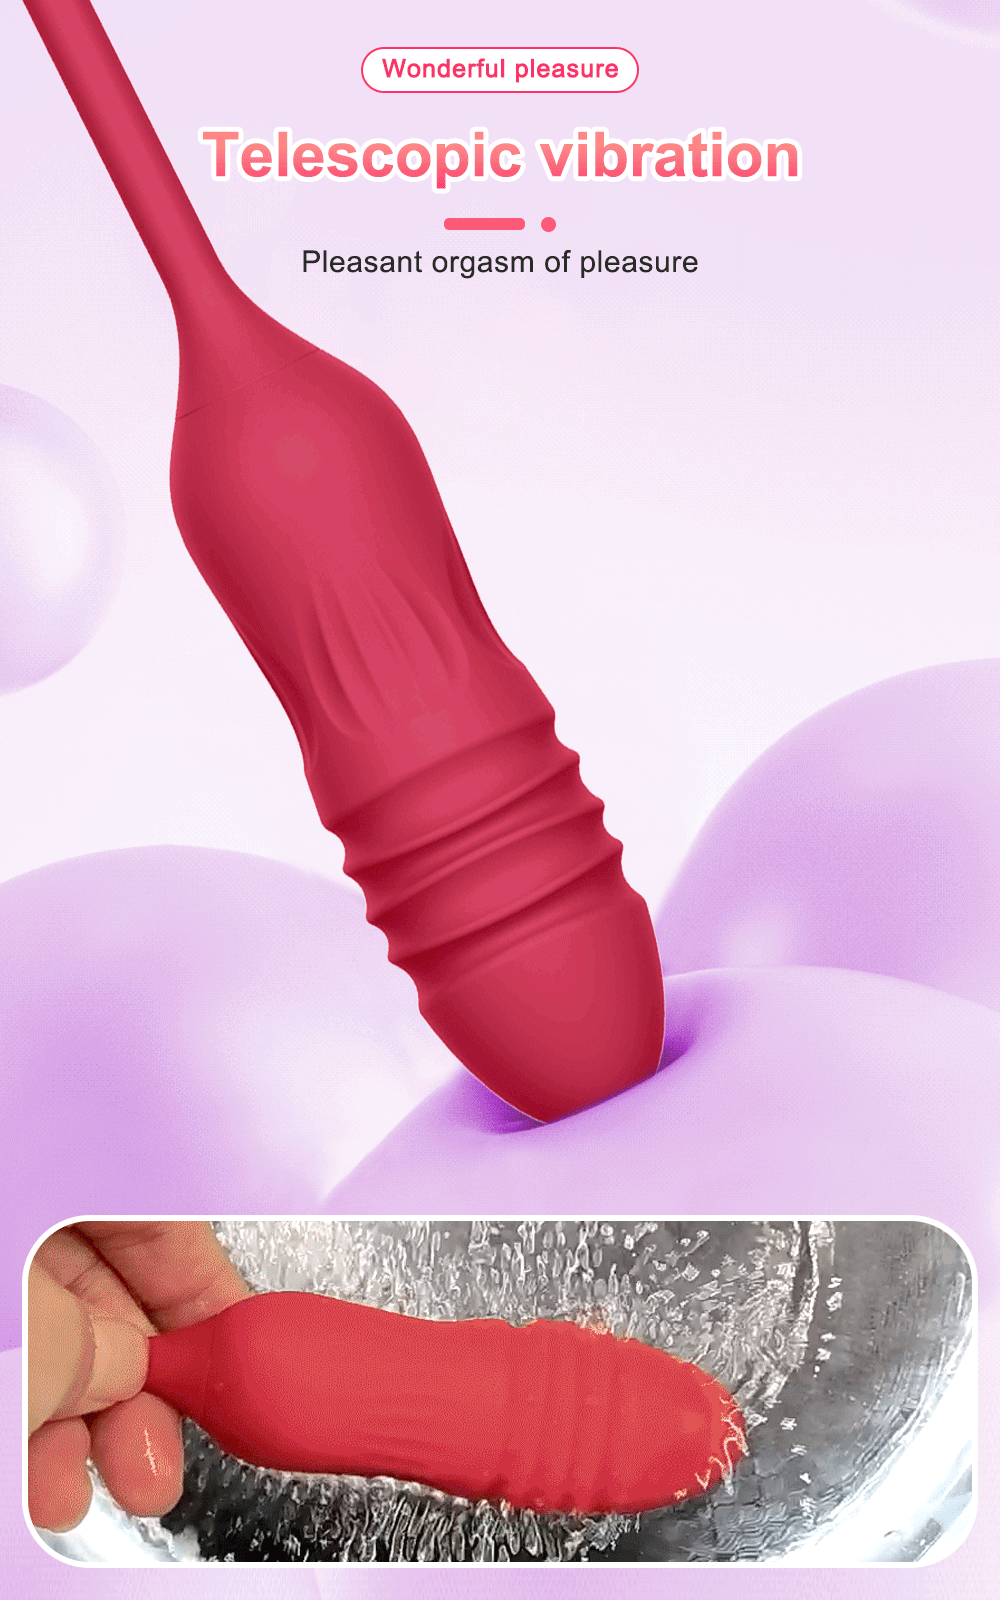 Rose Licker Vibrator med G-Spot Dildo teleskopisk vibration